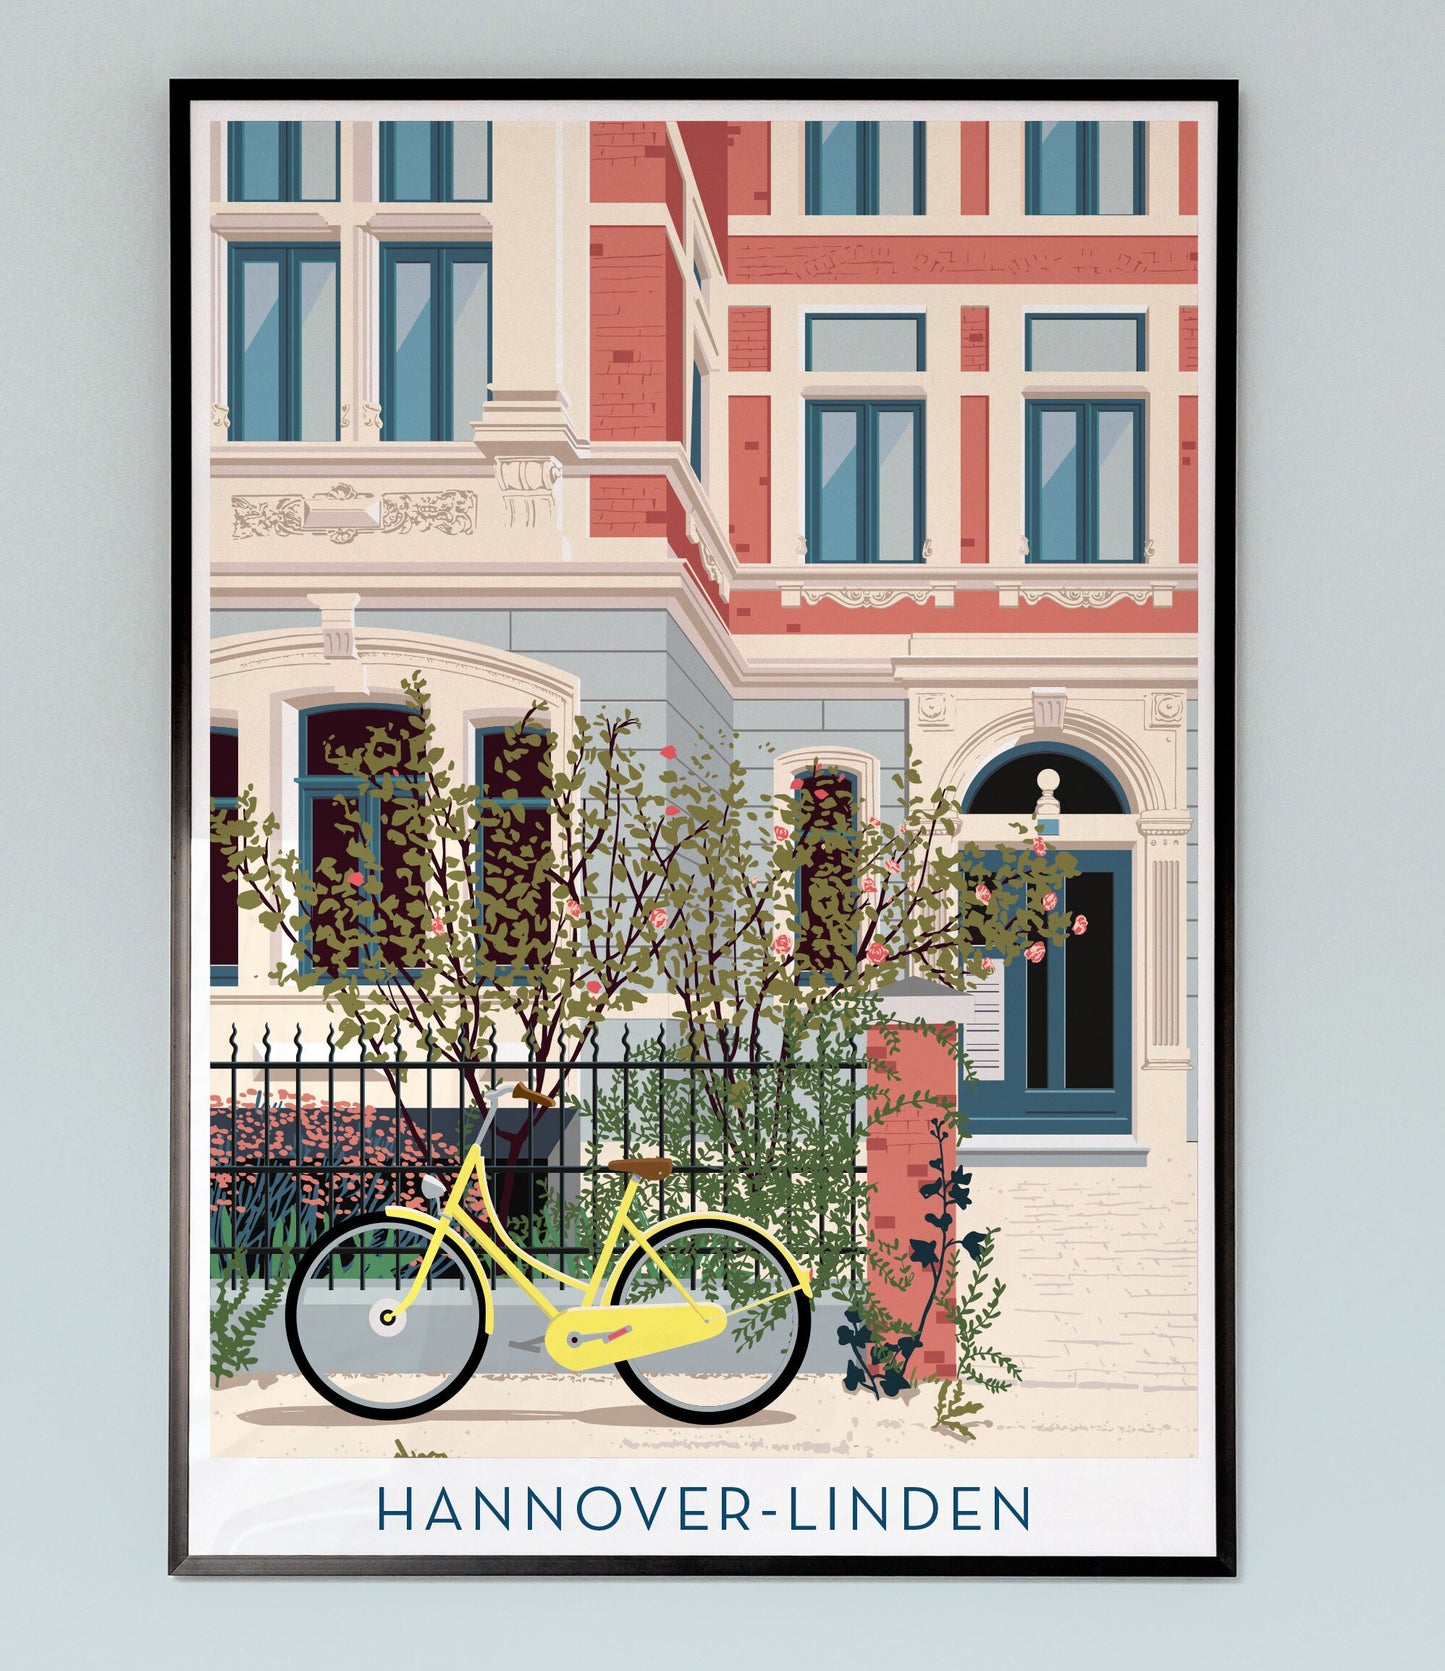 Stadtvilla in Linden | Hannover-Linden | Poster | Plakat | Illustration | Vektorgrafik